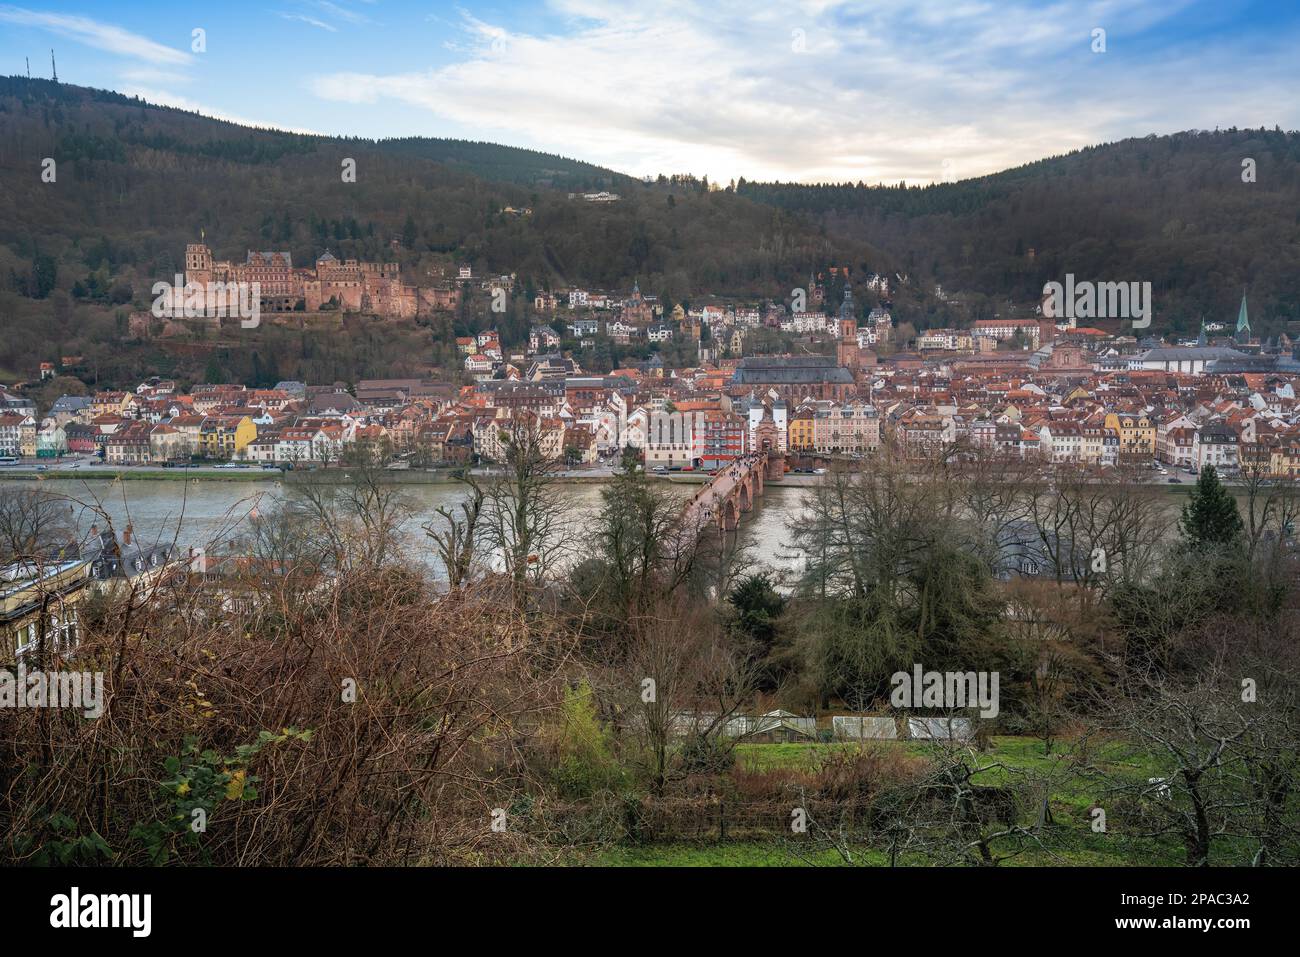 Blick auf die Altstadt mit Heidelberger Schloss, Alte Brücke und Heiliggeistkirche - Heidelberg, Deutschland Stockfoto